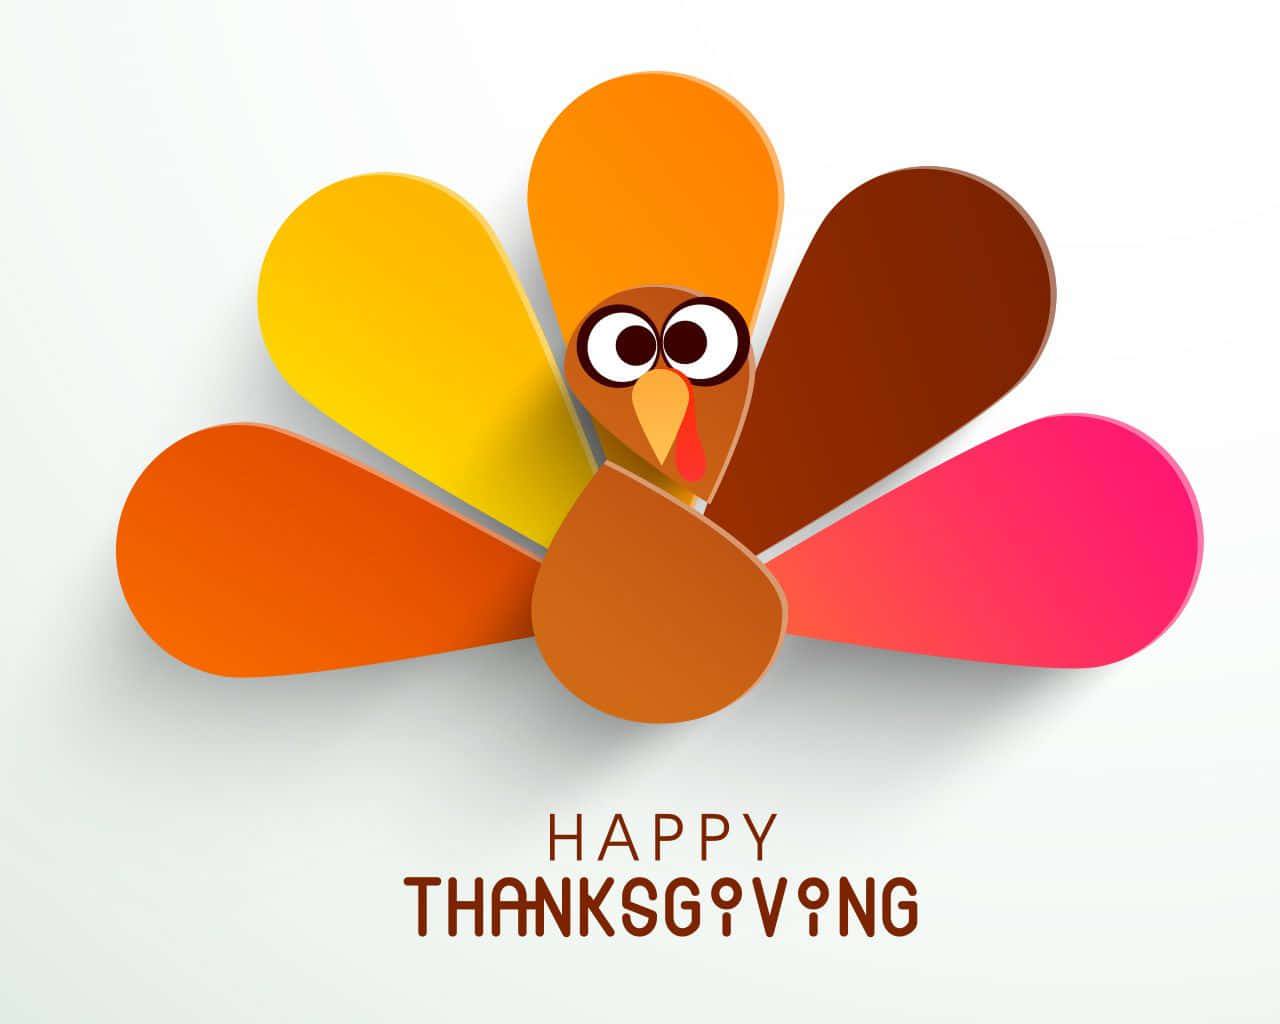 Ønsker dig og din familie en rigtig glædelig Thanksgiving! Wallpaper